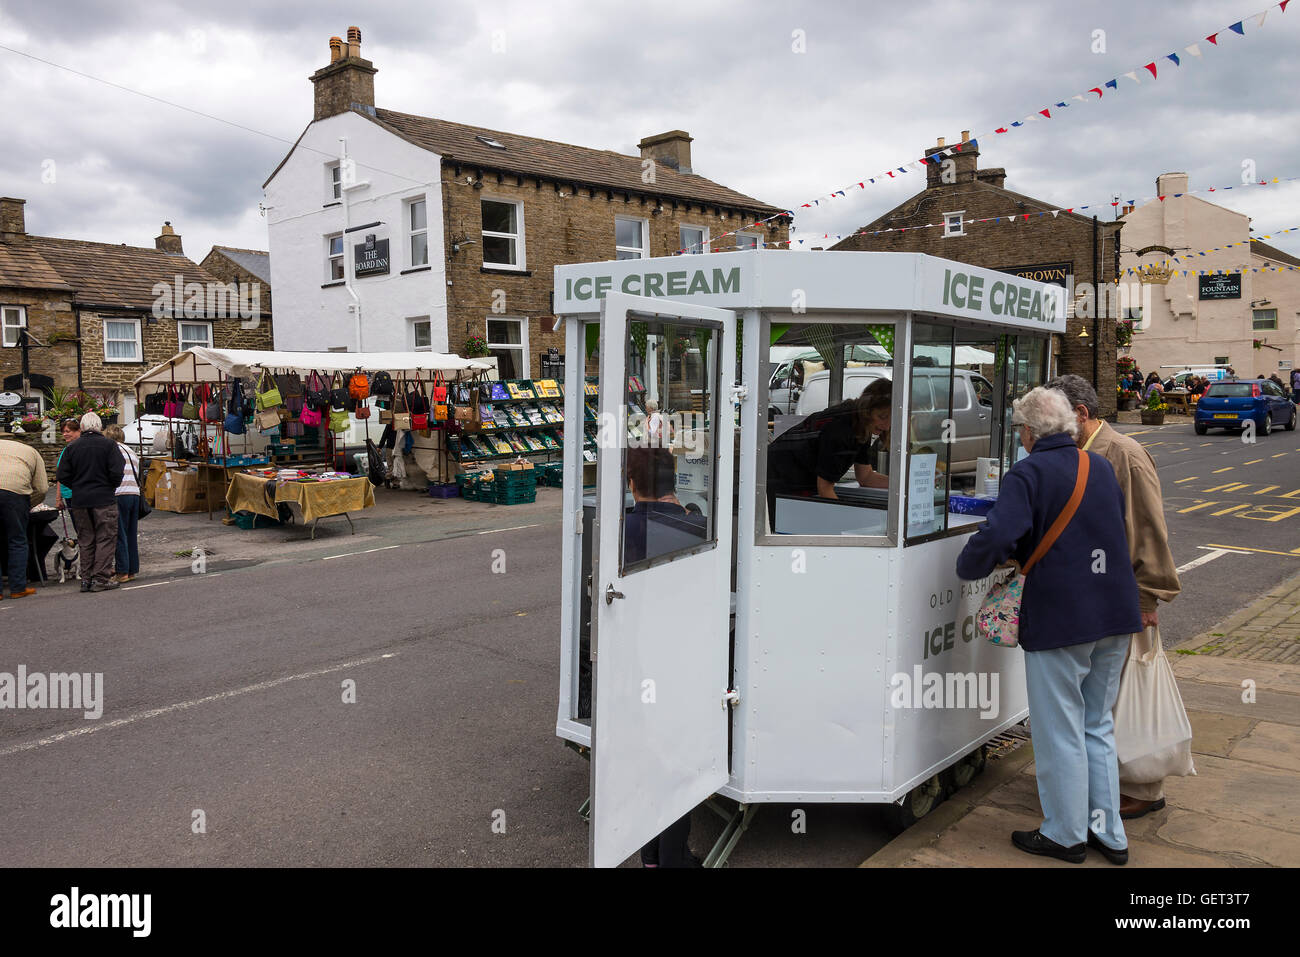 Giornata di mercato a Hawes con Ice Cream Caravan, bancarelle e tre case pubbliche Yorkshire Dales Inghilterra Regno Unito Regno Unito Foto Stock